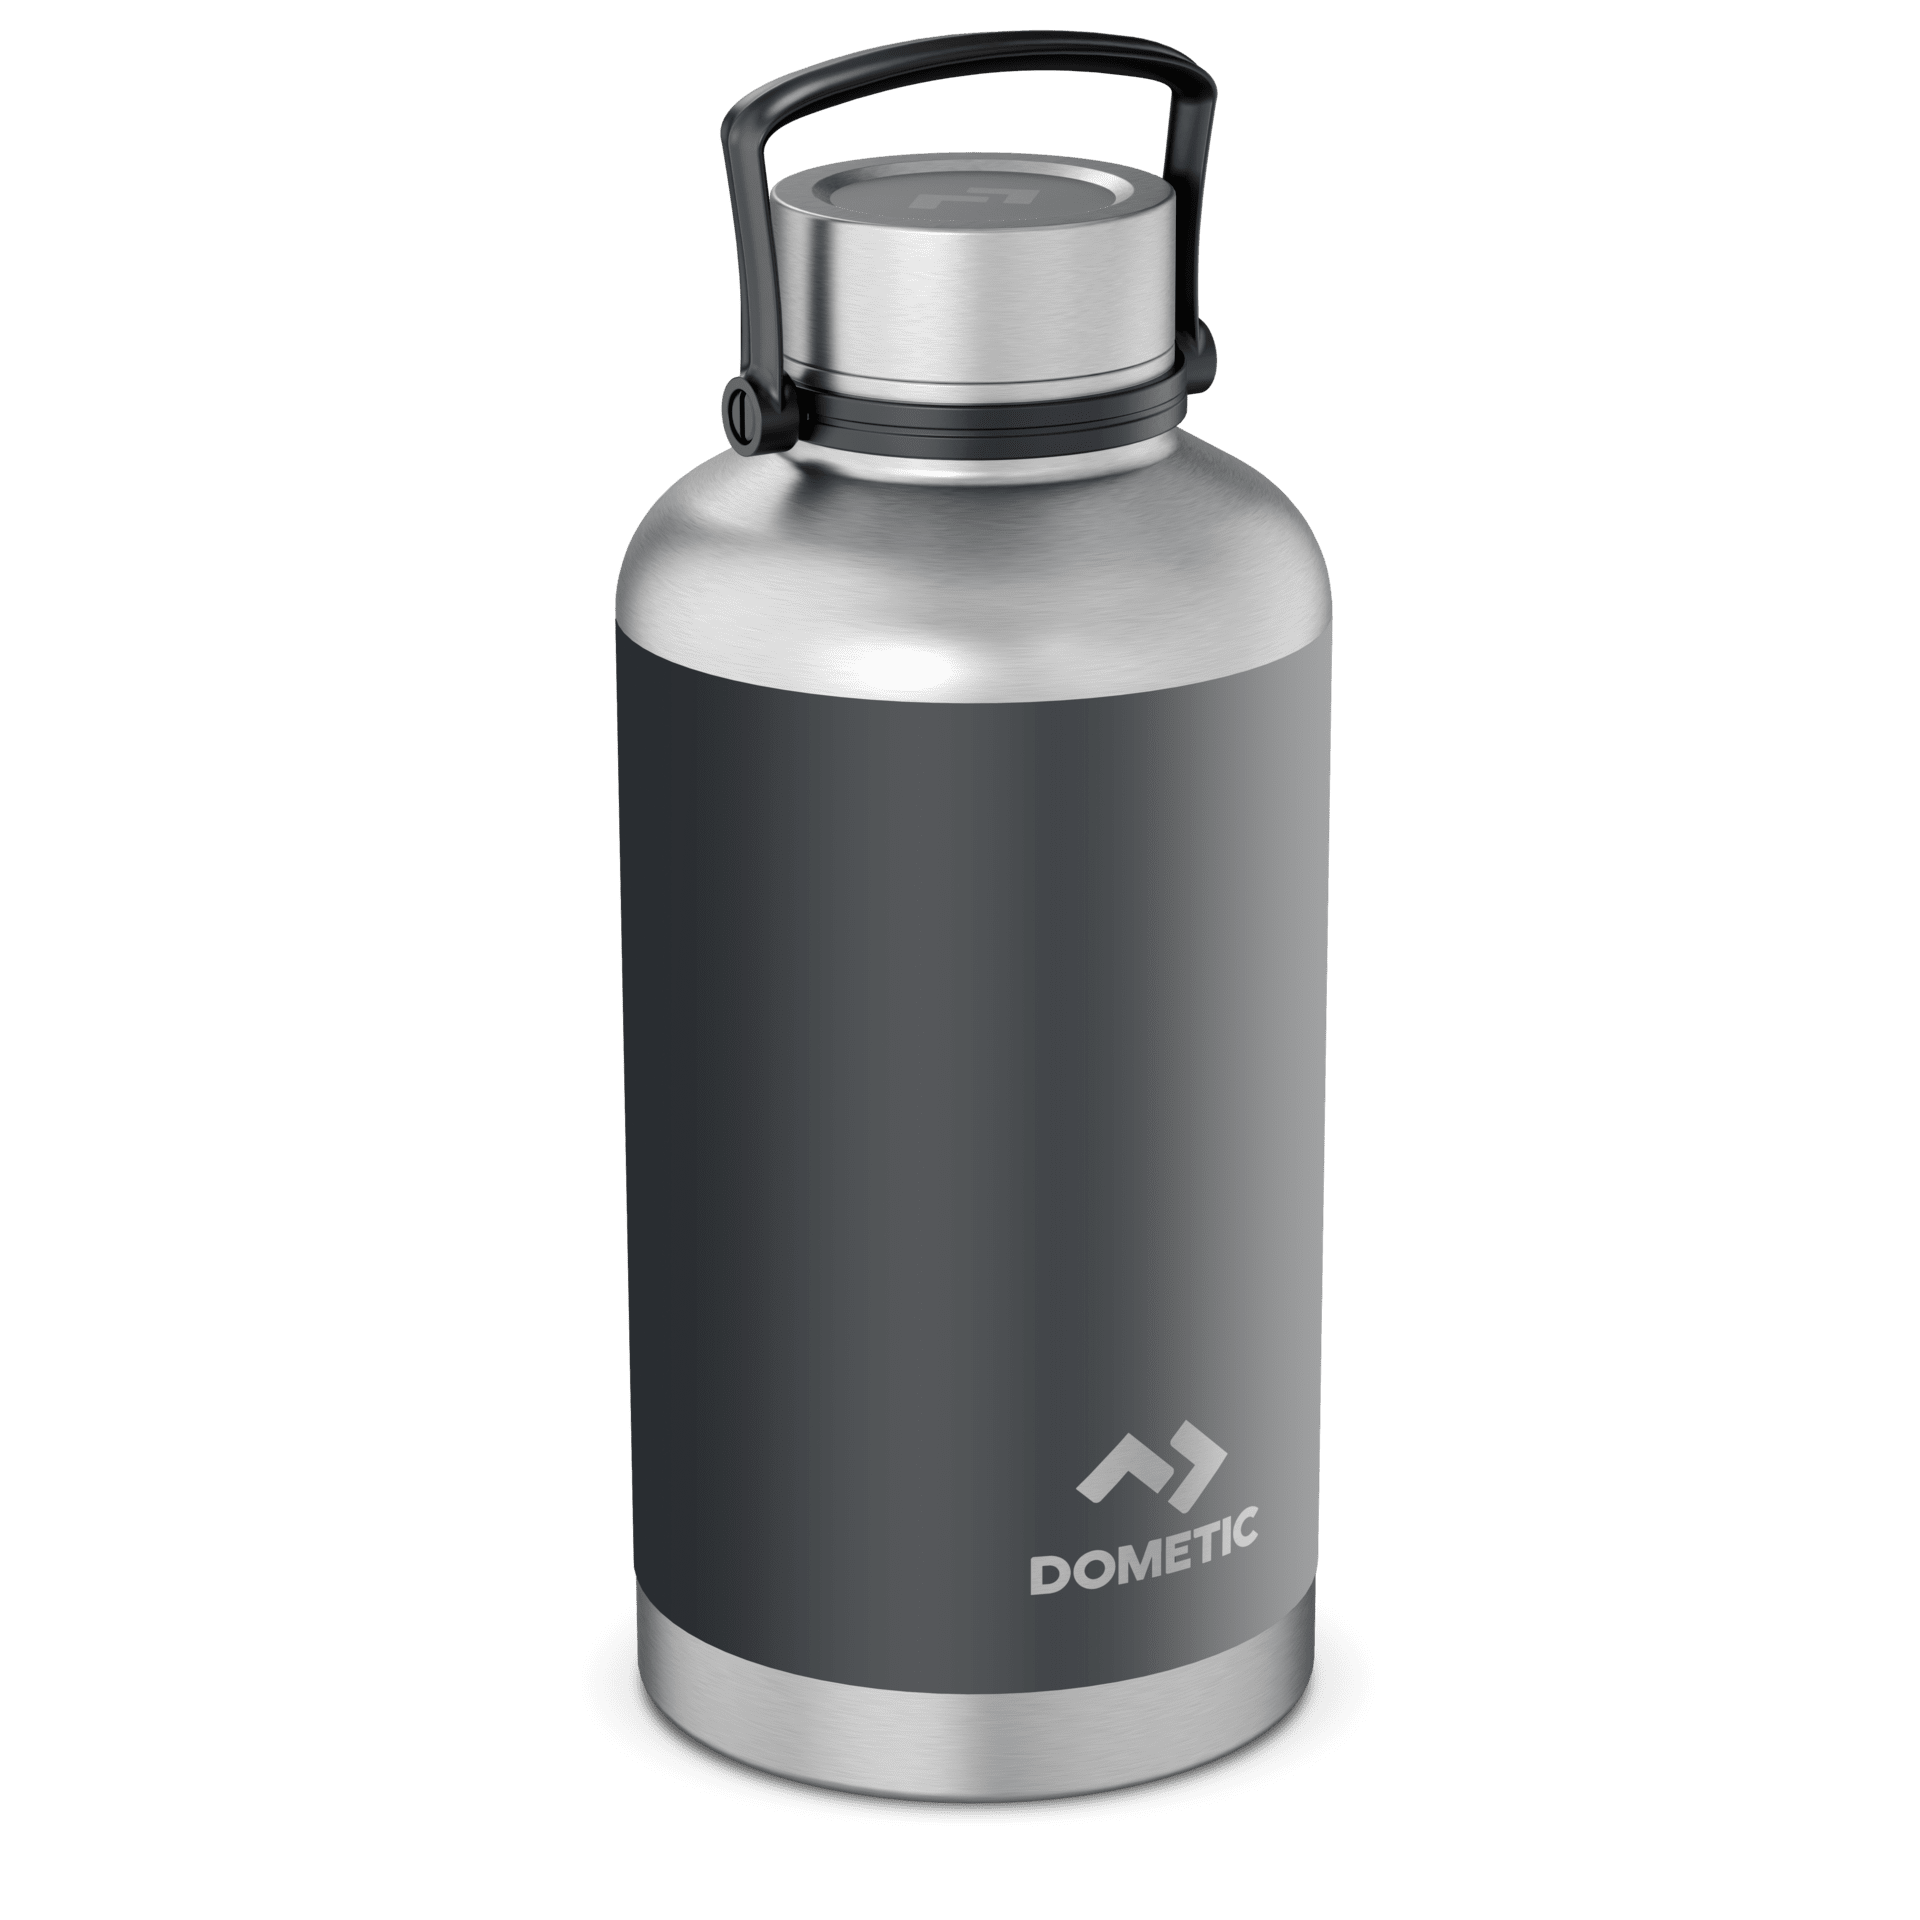 Vacuum Stainless Steel 3 In 1 Thermal Flask - 500ml - Black